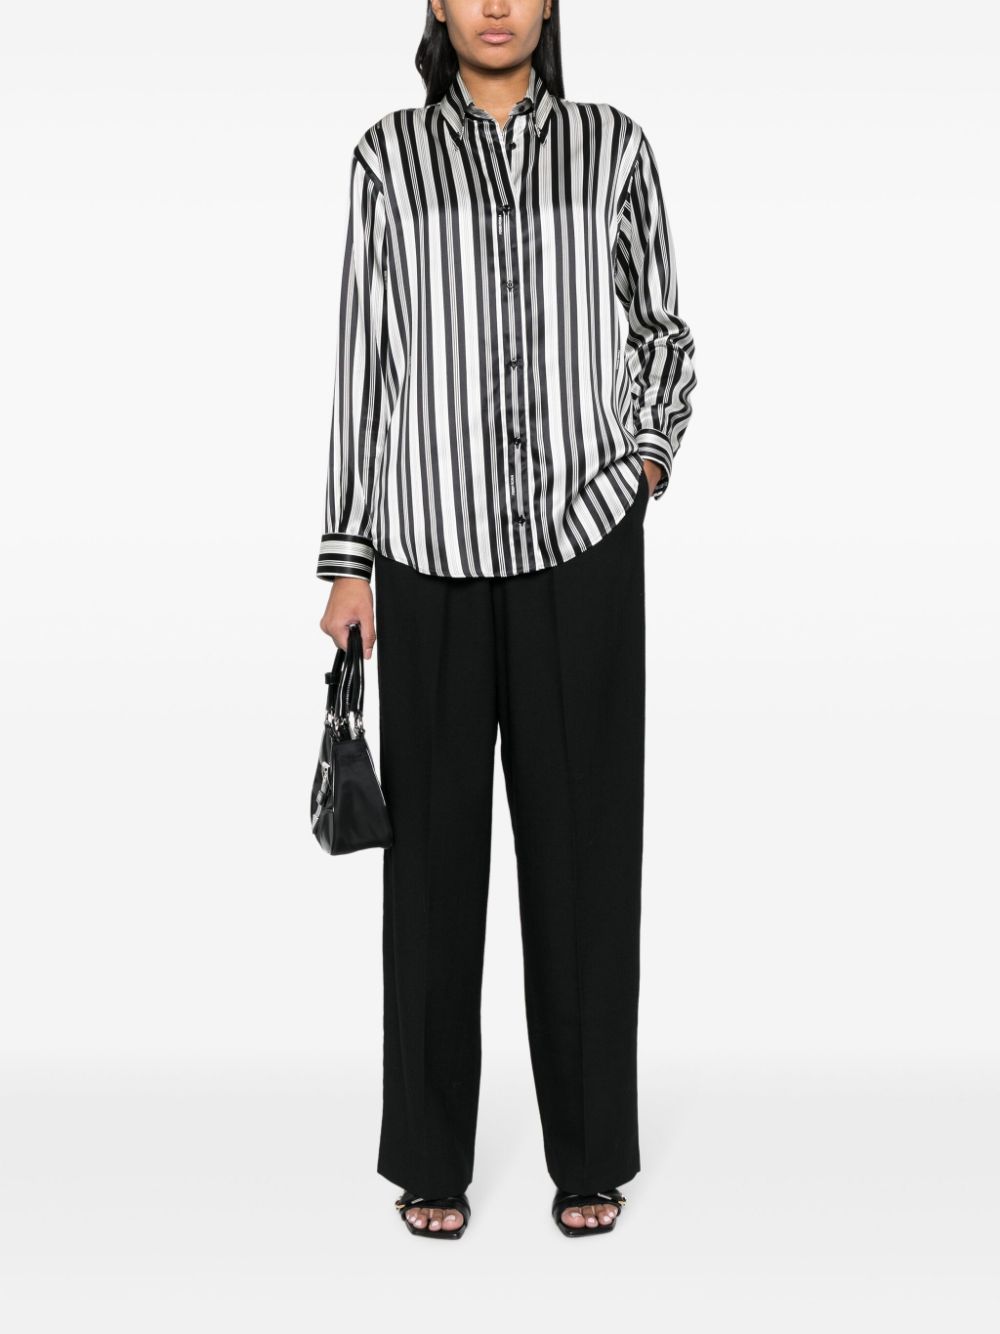 黑白丝质条纹垂直图案女式经典衬衫